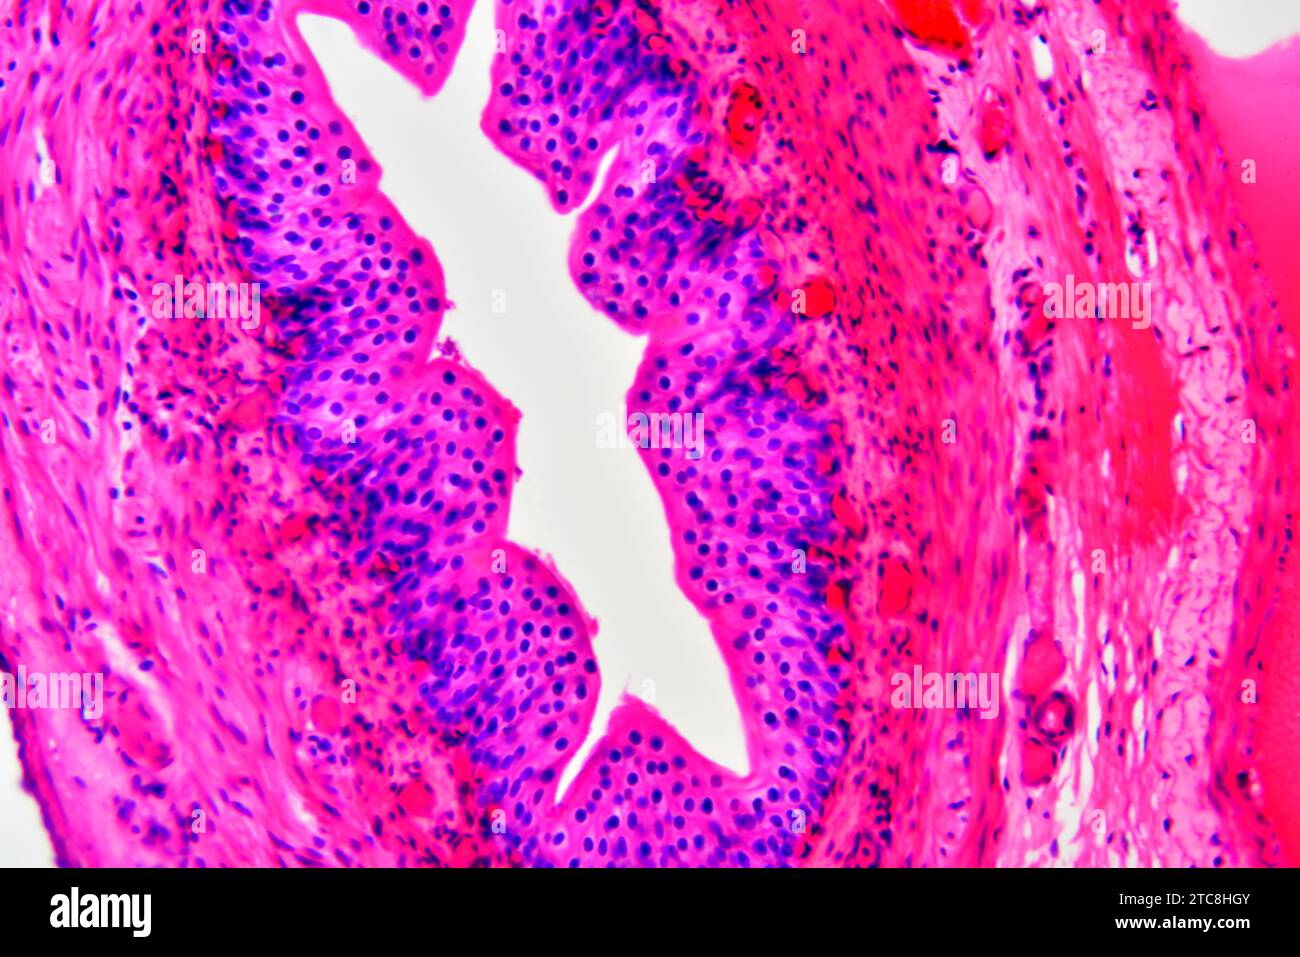 Artère (vaisseau sanguin) montrant une tunica adventice, un média et une intima. Microscope optique X300 à 10 cm de large. Banque D'Images